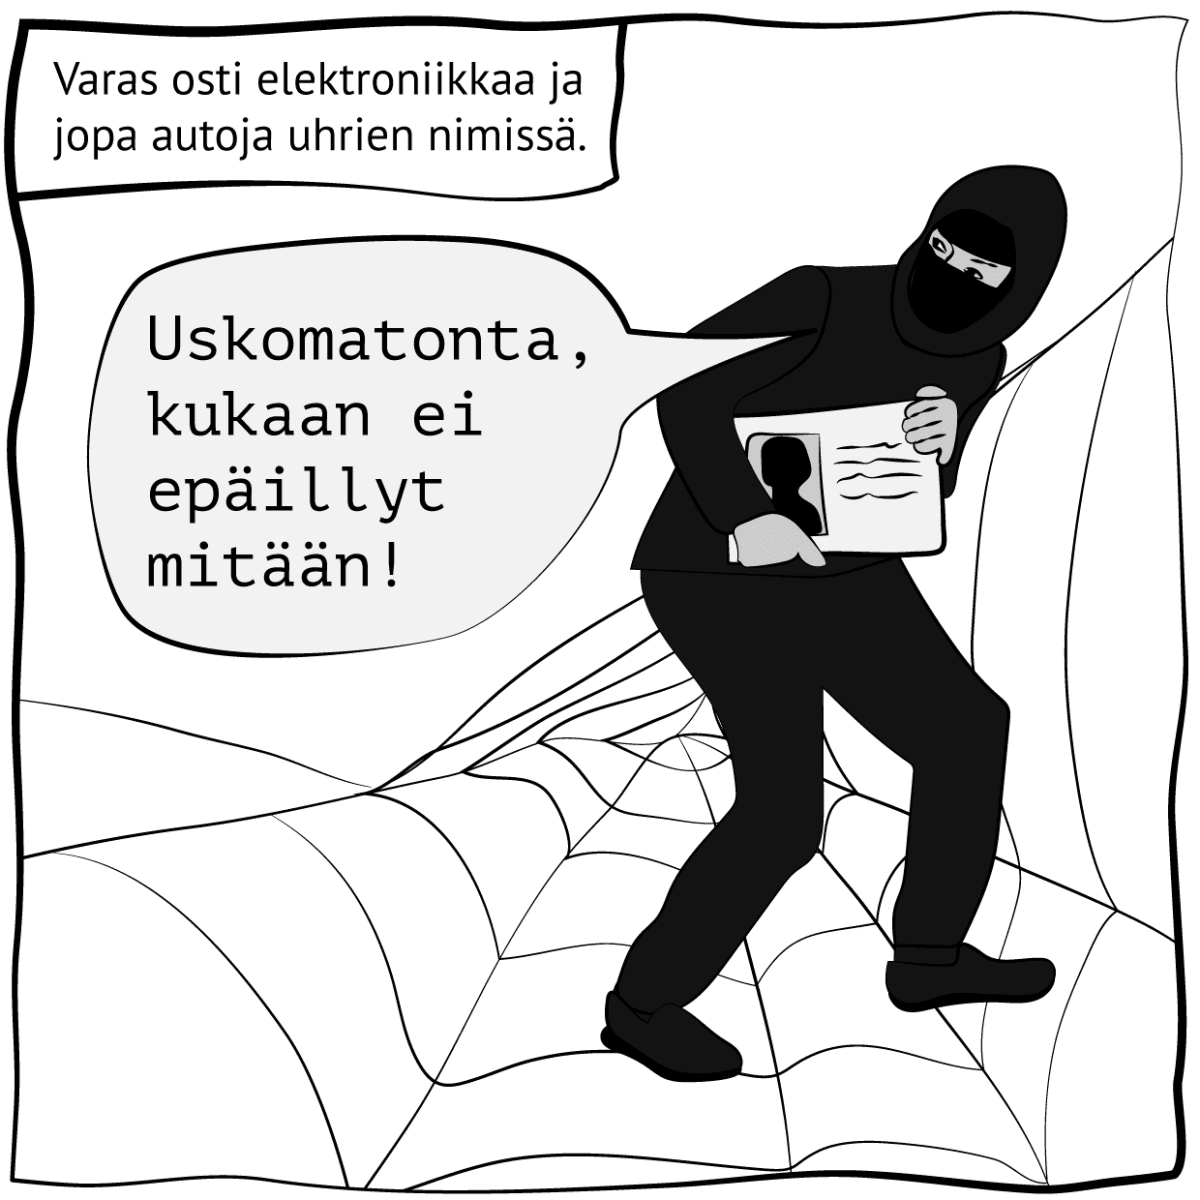 Piirroskuva, jossa lukee "Varas osti elektroniikkaa ja jopa autoja uhrien nimissä". Kuva: Stina Tuominen / Yle